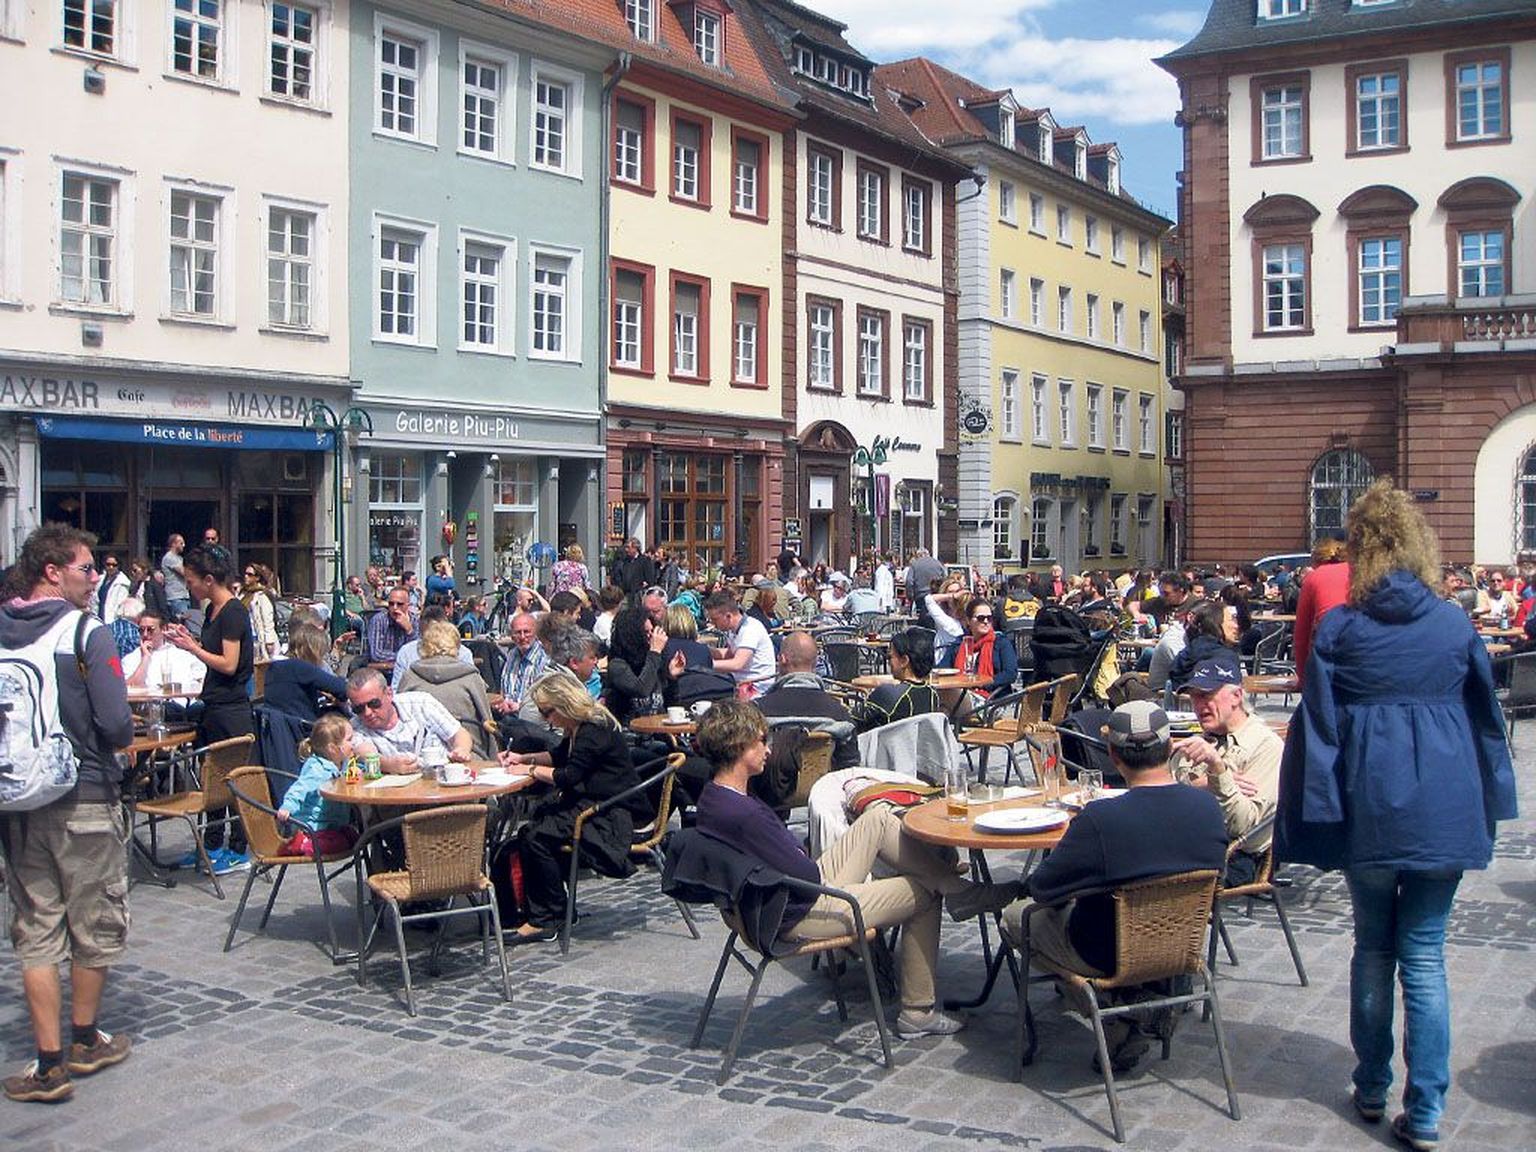 Saksamaa ülikoolilinnade kohvikud teeb eriliseks anonüümsuse puudumine, sest koos kohalikega sisenedes tekib kohe tunne, et oled nagu ühe väikese pere liige.